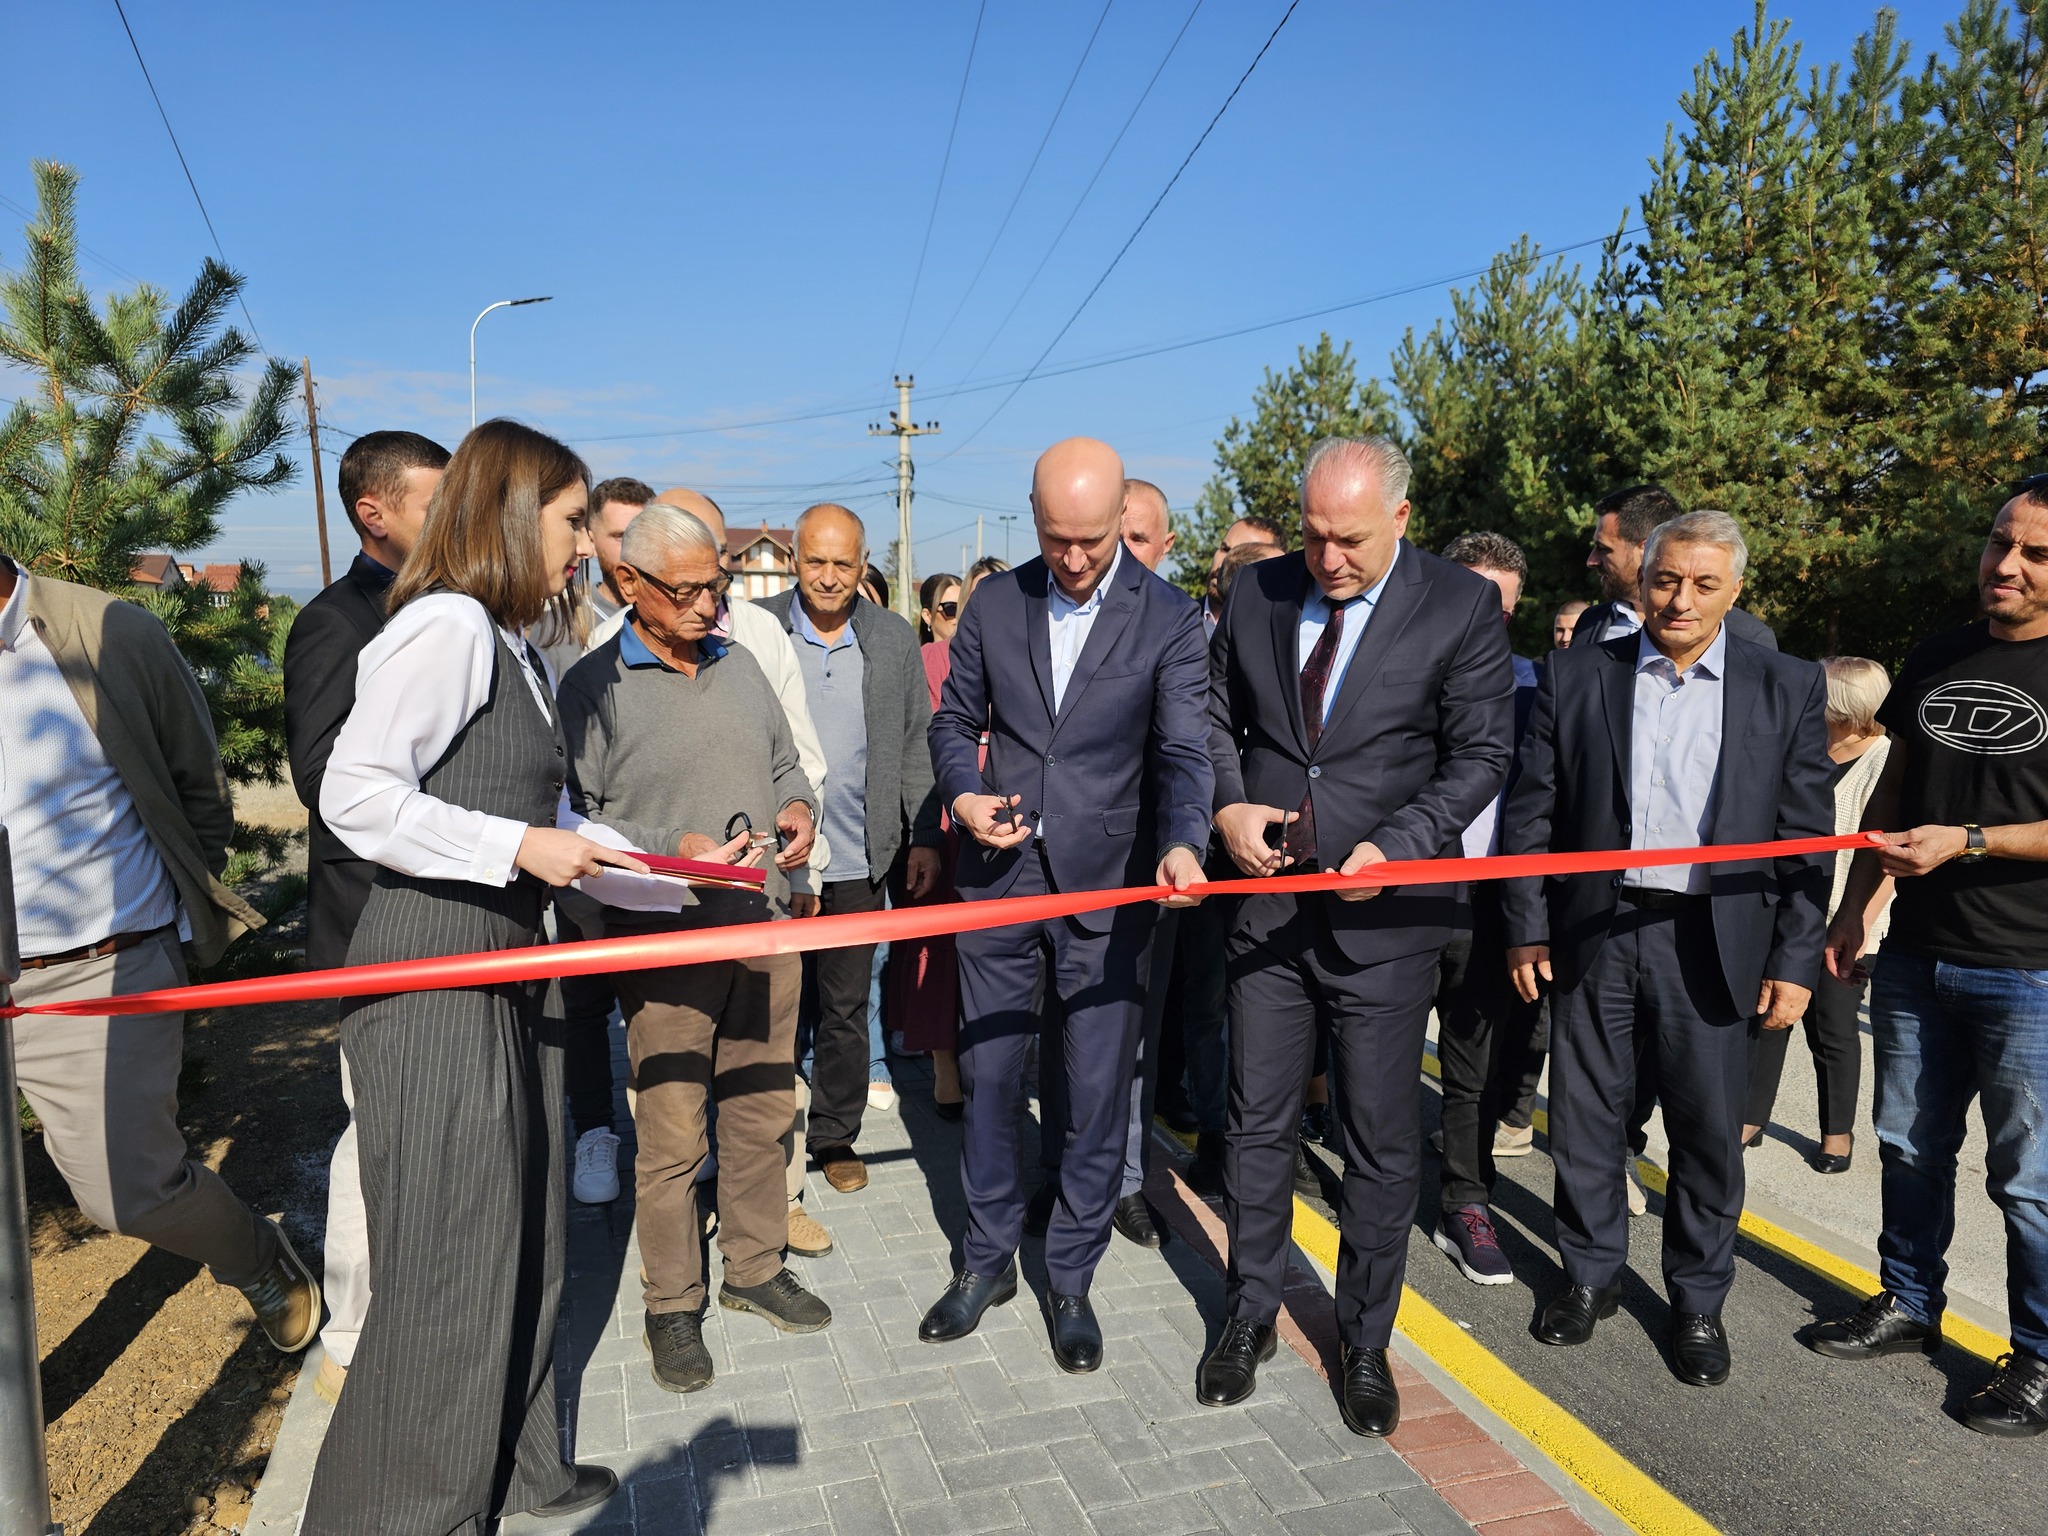 Ministri z.Damka dhe Kryetari z. Aliu inauguruan Projektin “ Rregullimi i shtigjeve të ecjes, çiklizmit dhe ndriçimit publik në rrugën Ferizaj” në Komunën e Shtimes